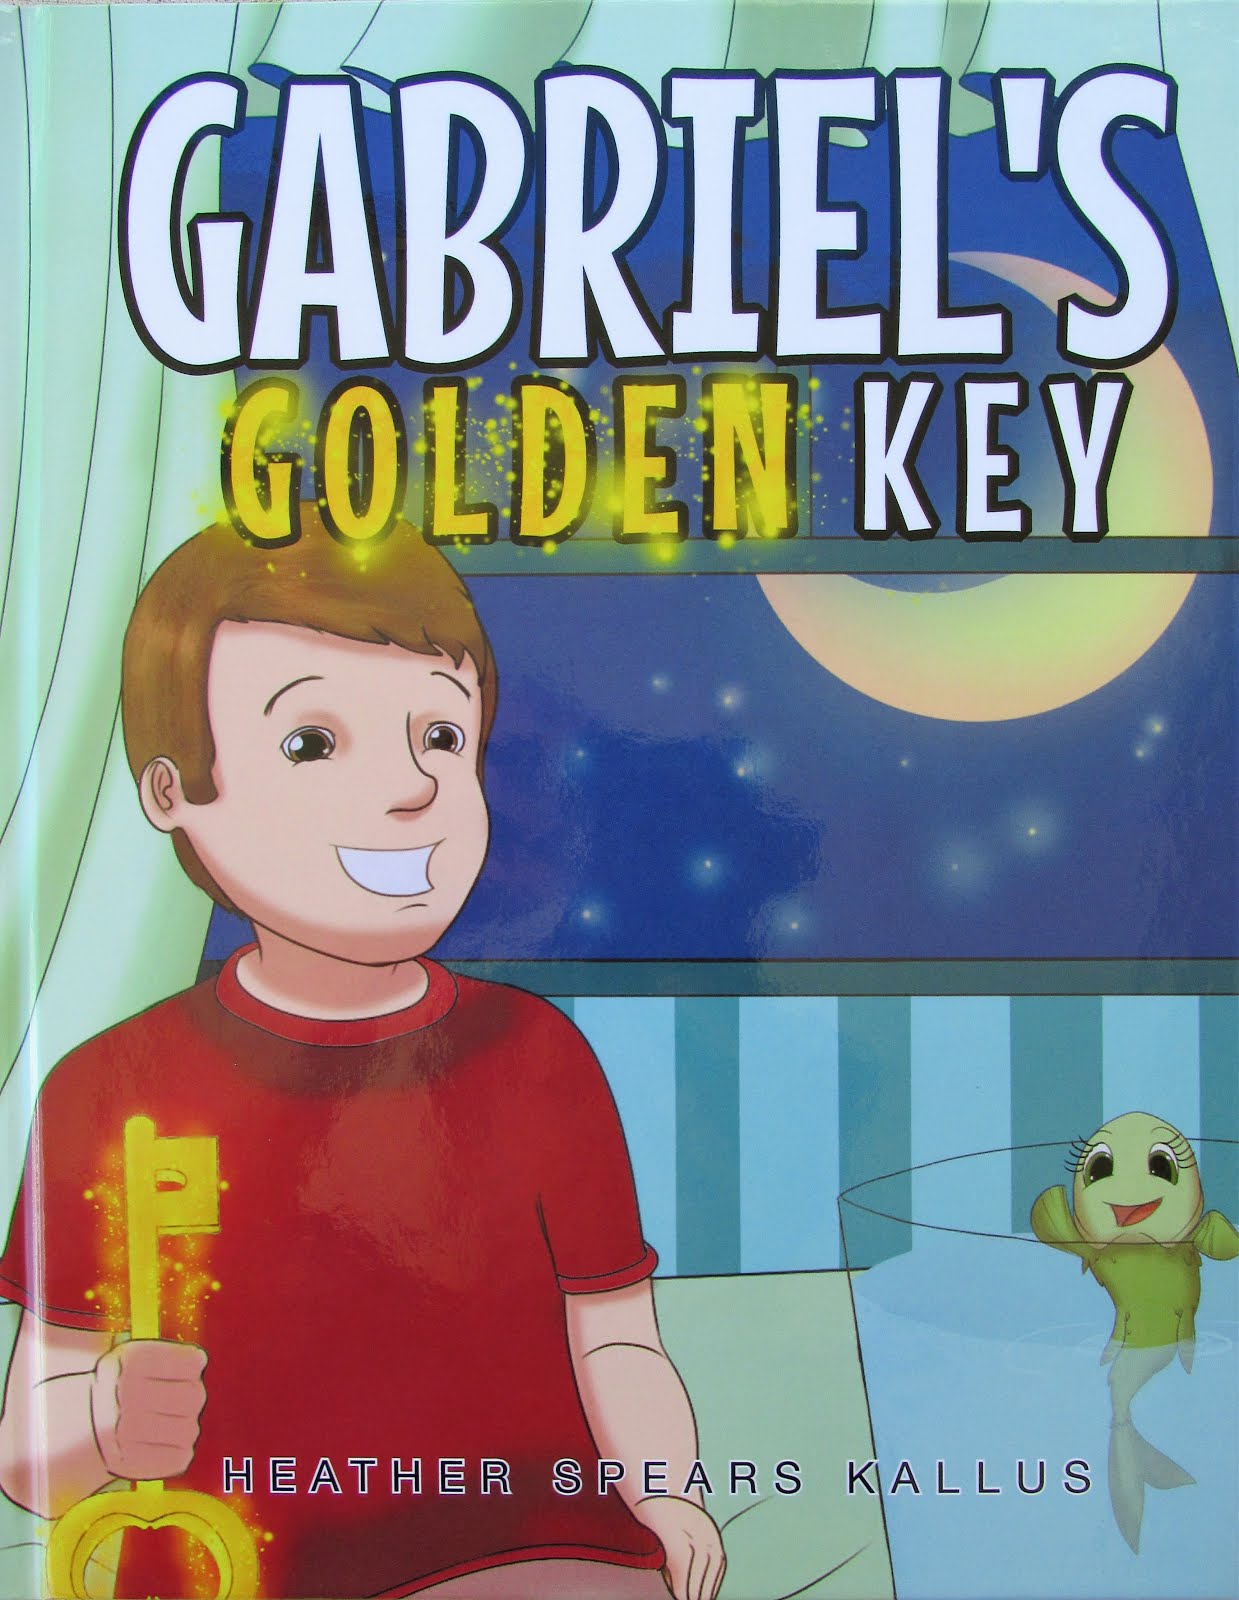 My 1st children's book - Gabriel's Golden Key